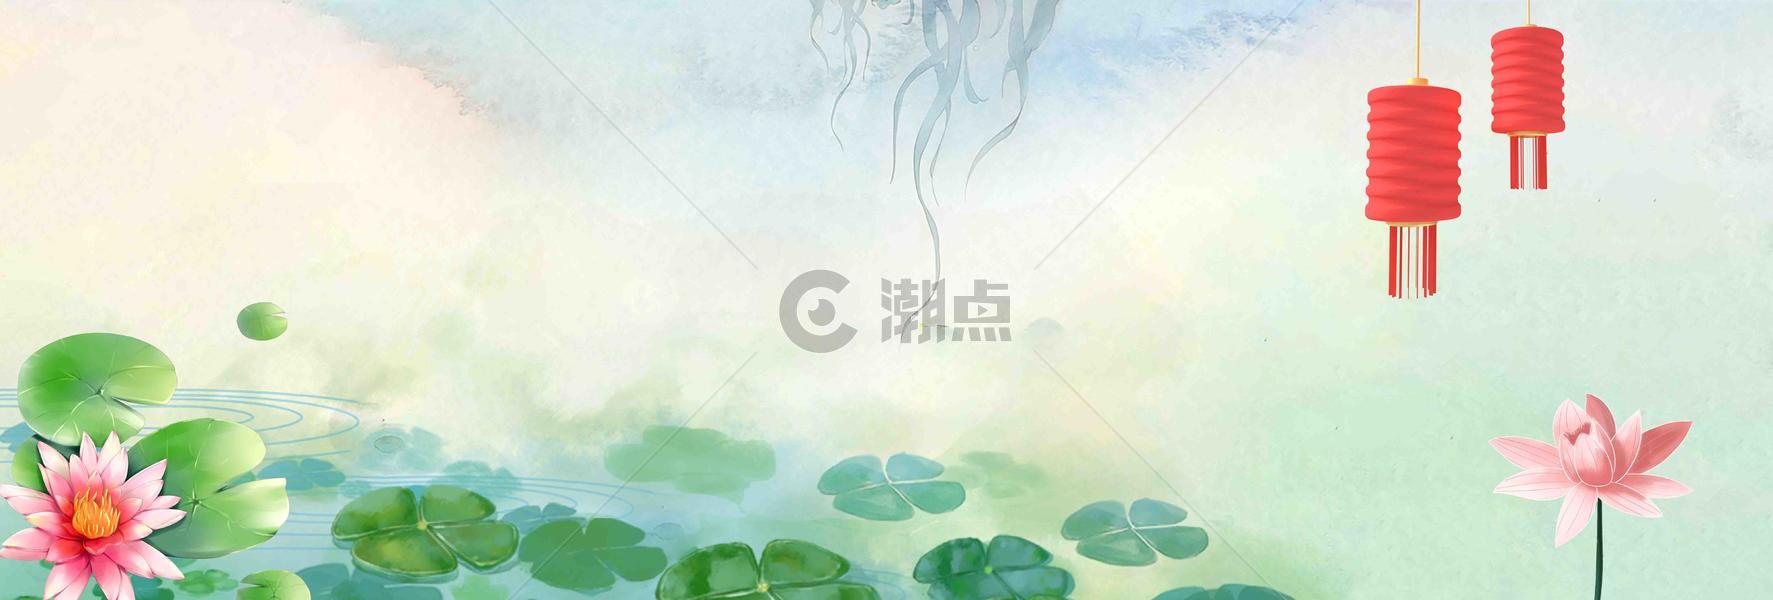 中国风文艺背景图片素材免费下载